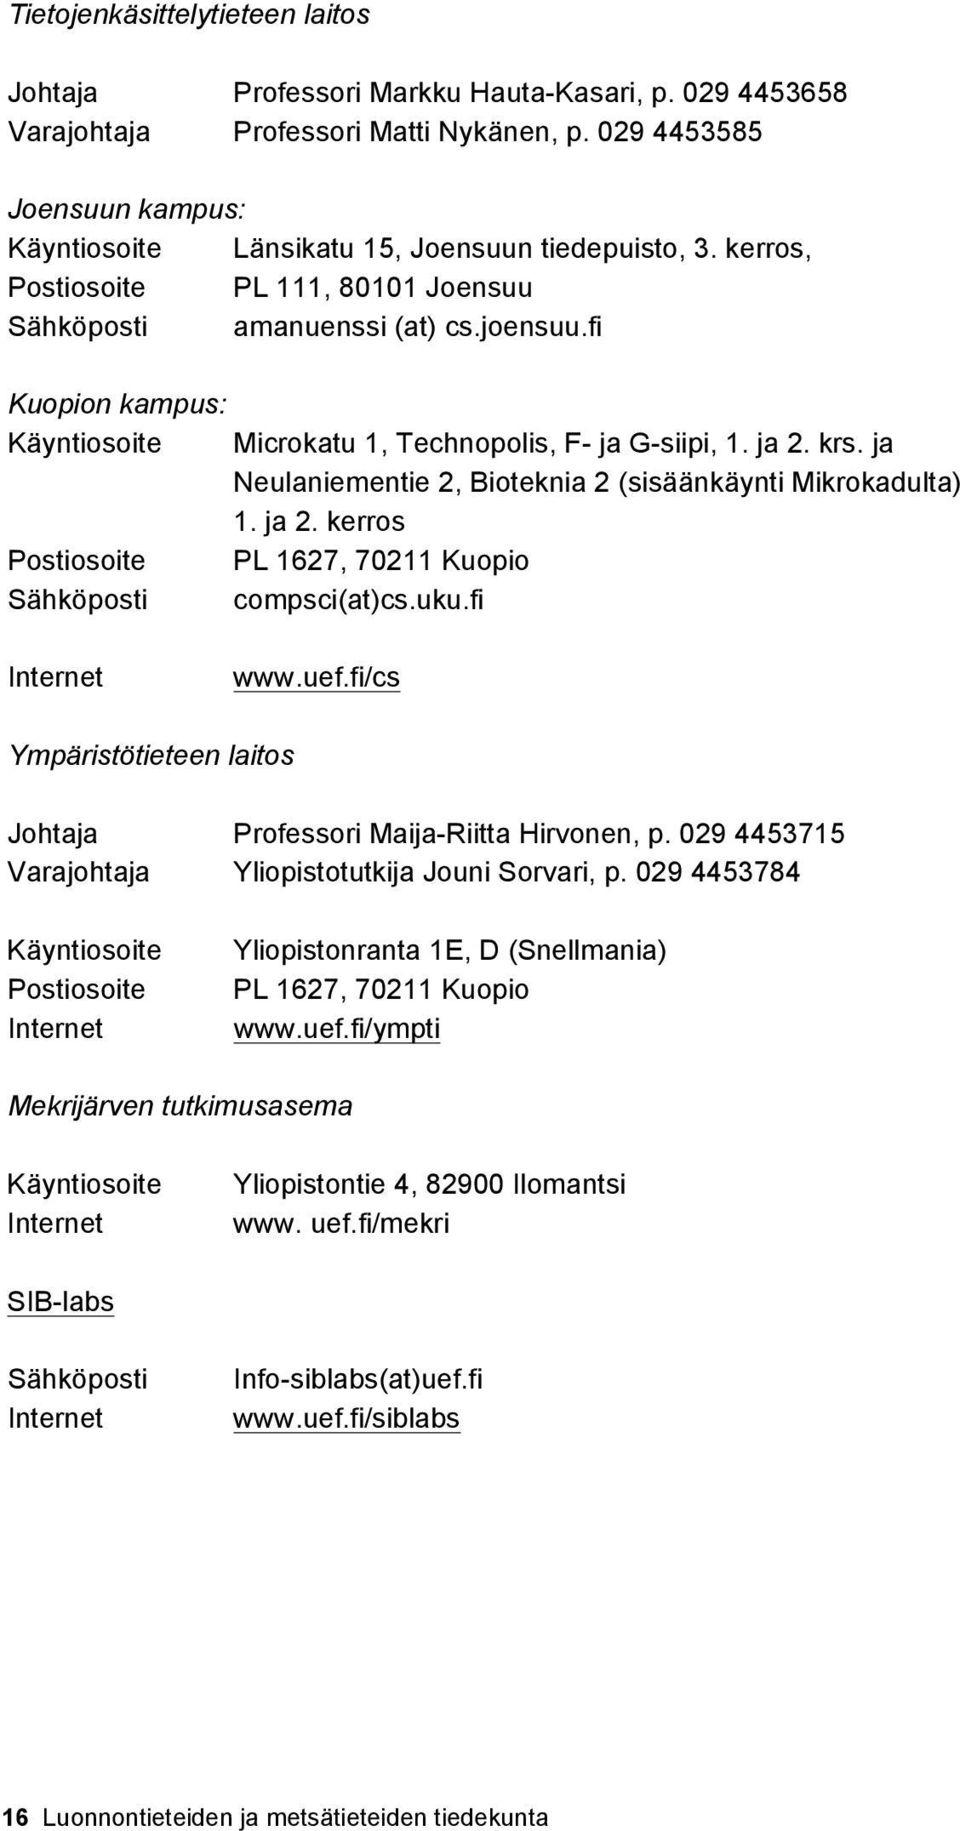 fi Kuopion kampus: Käyntiosoite Microkatu 1, Technopolis, F- ja G-siipi, 1. ja 2. krs. ja Neulaniementie 2, Bioteknia 2 (sisäänkäynti Mikrokadulta) 1. ja 2. kerros Postiosoite PL 1627, 70211 Kuopio Sähköposti compsci(at)cs.